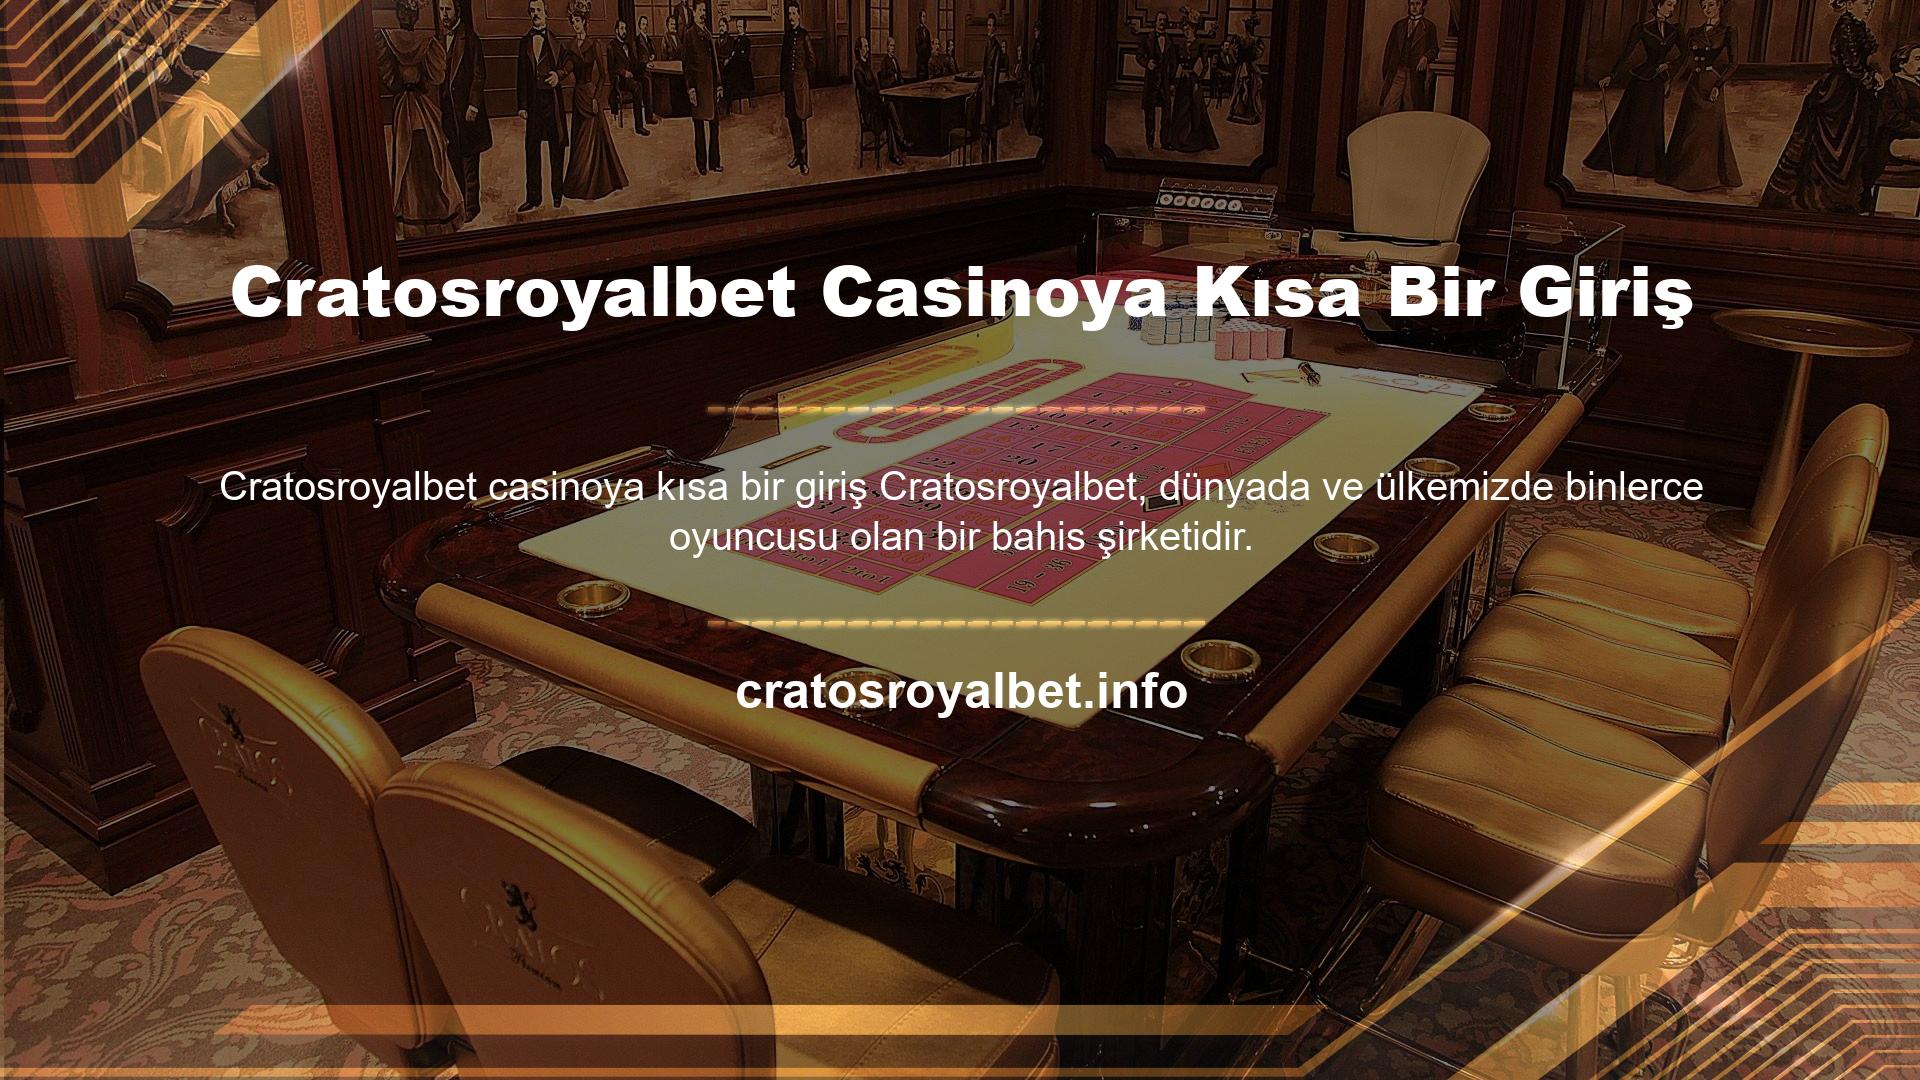 Cratosroyalbet casinoya kısa bir giriş